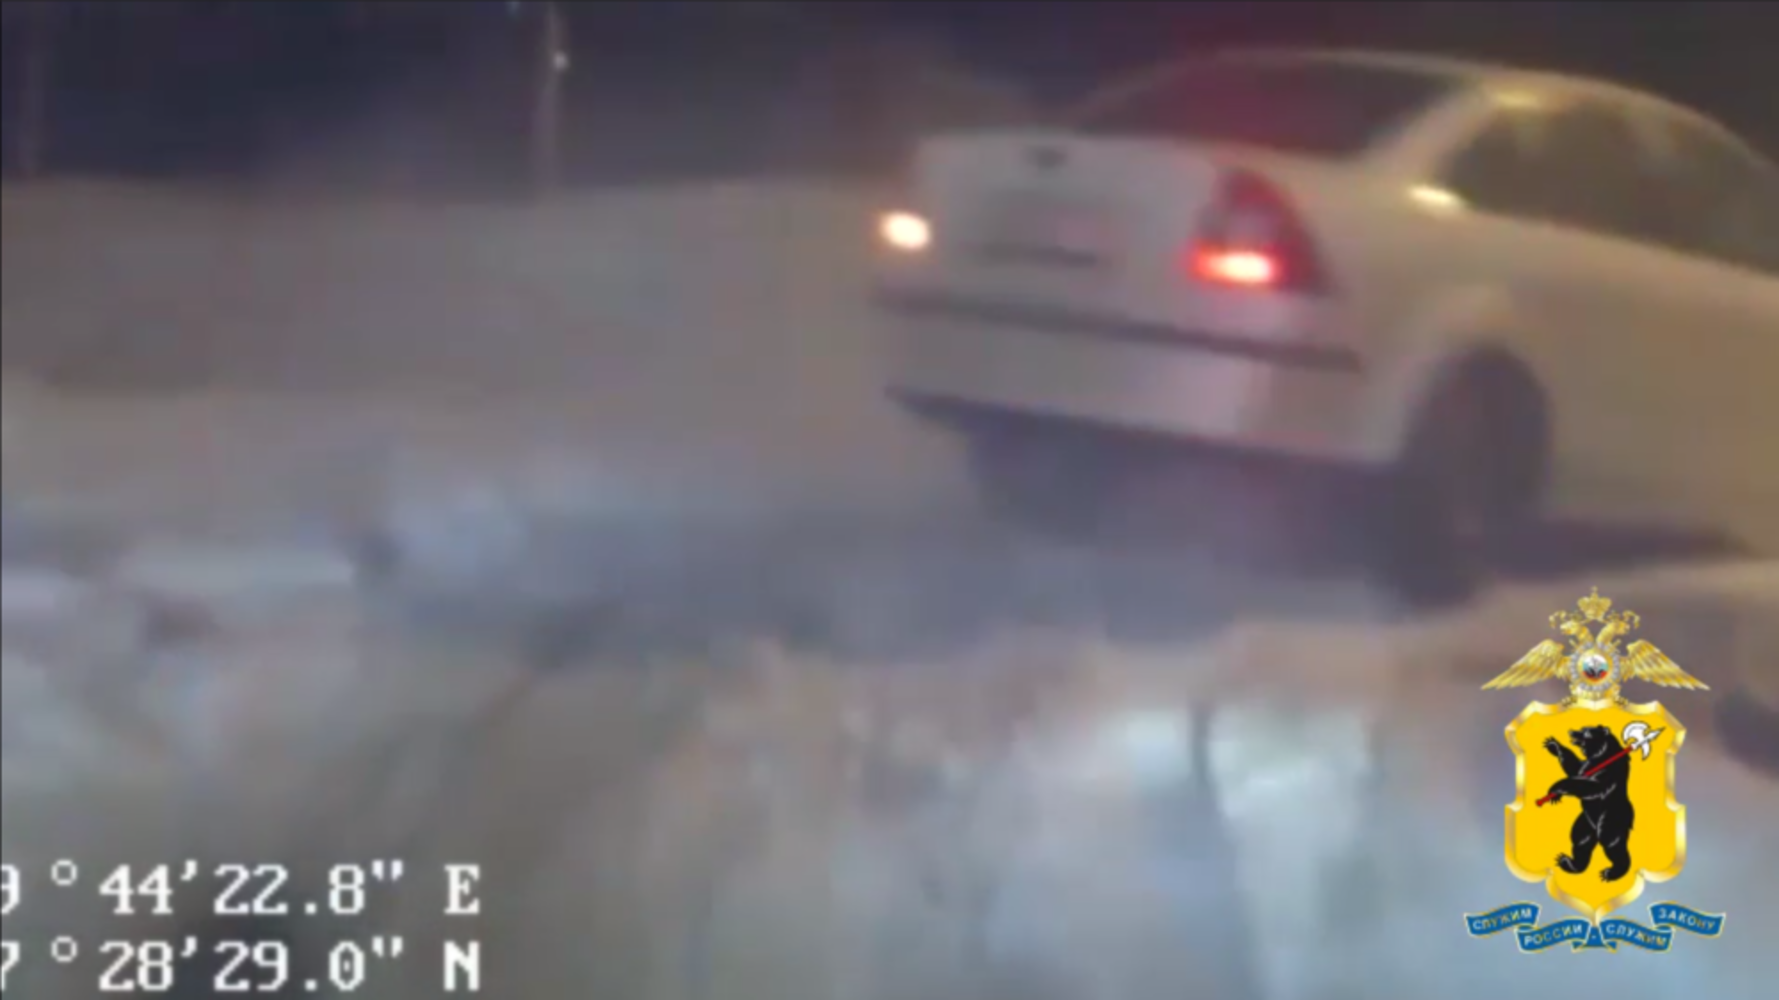 Ярославского водителя задержали после полицейской погони